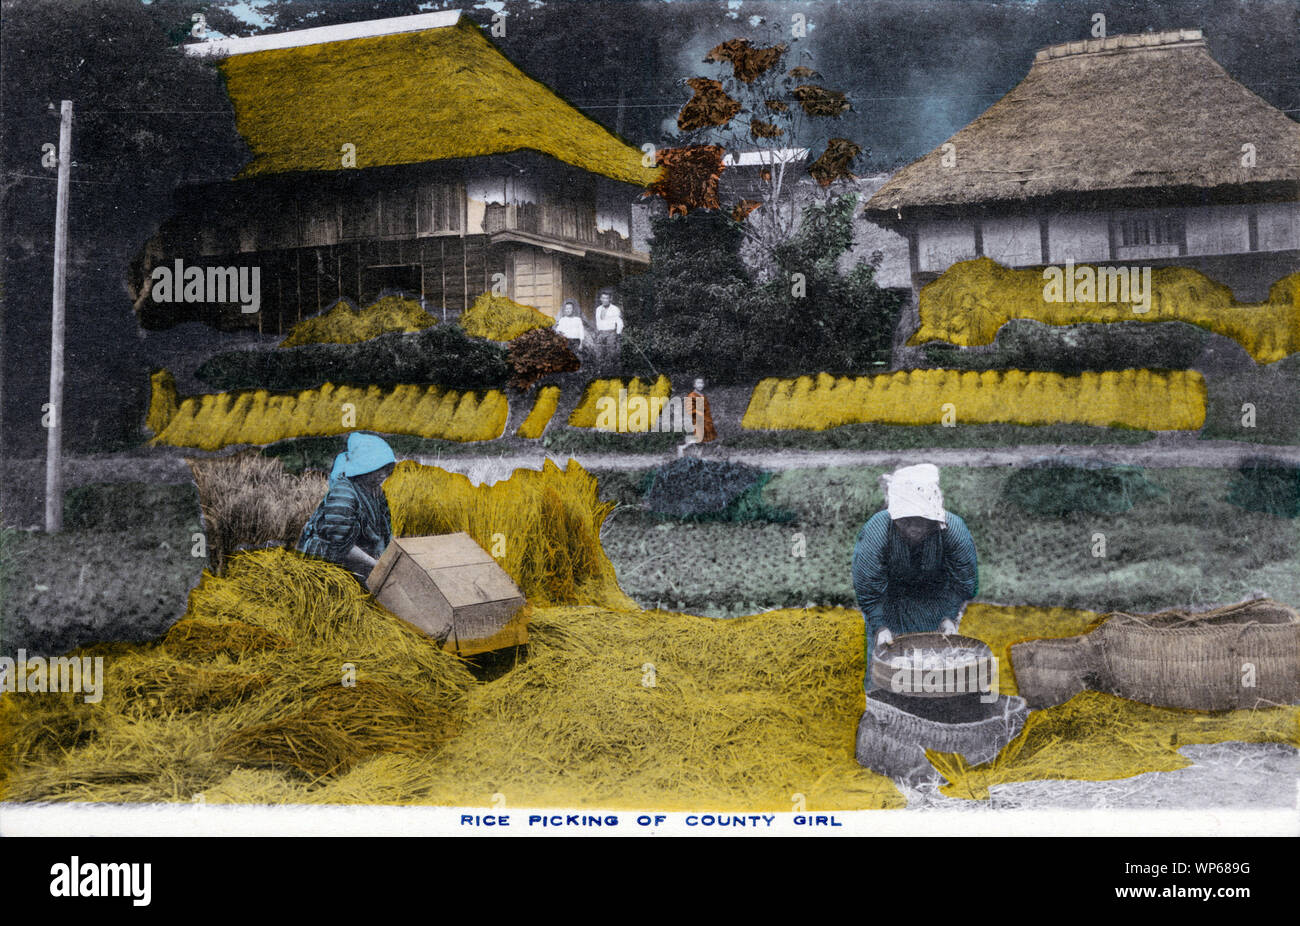 [ 1920 - Japon ] La Récolte de riz du Japon - deux femmes en yukata travaillent sur la récolte de riz. Cette carte postale est d'une série sur l'agriculture japonaise, appelé Farmer La vie au Japon. 20e siècle vintage carte postale. Banque D'Images